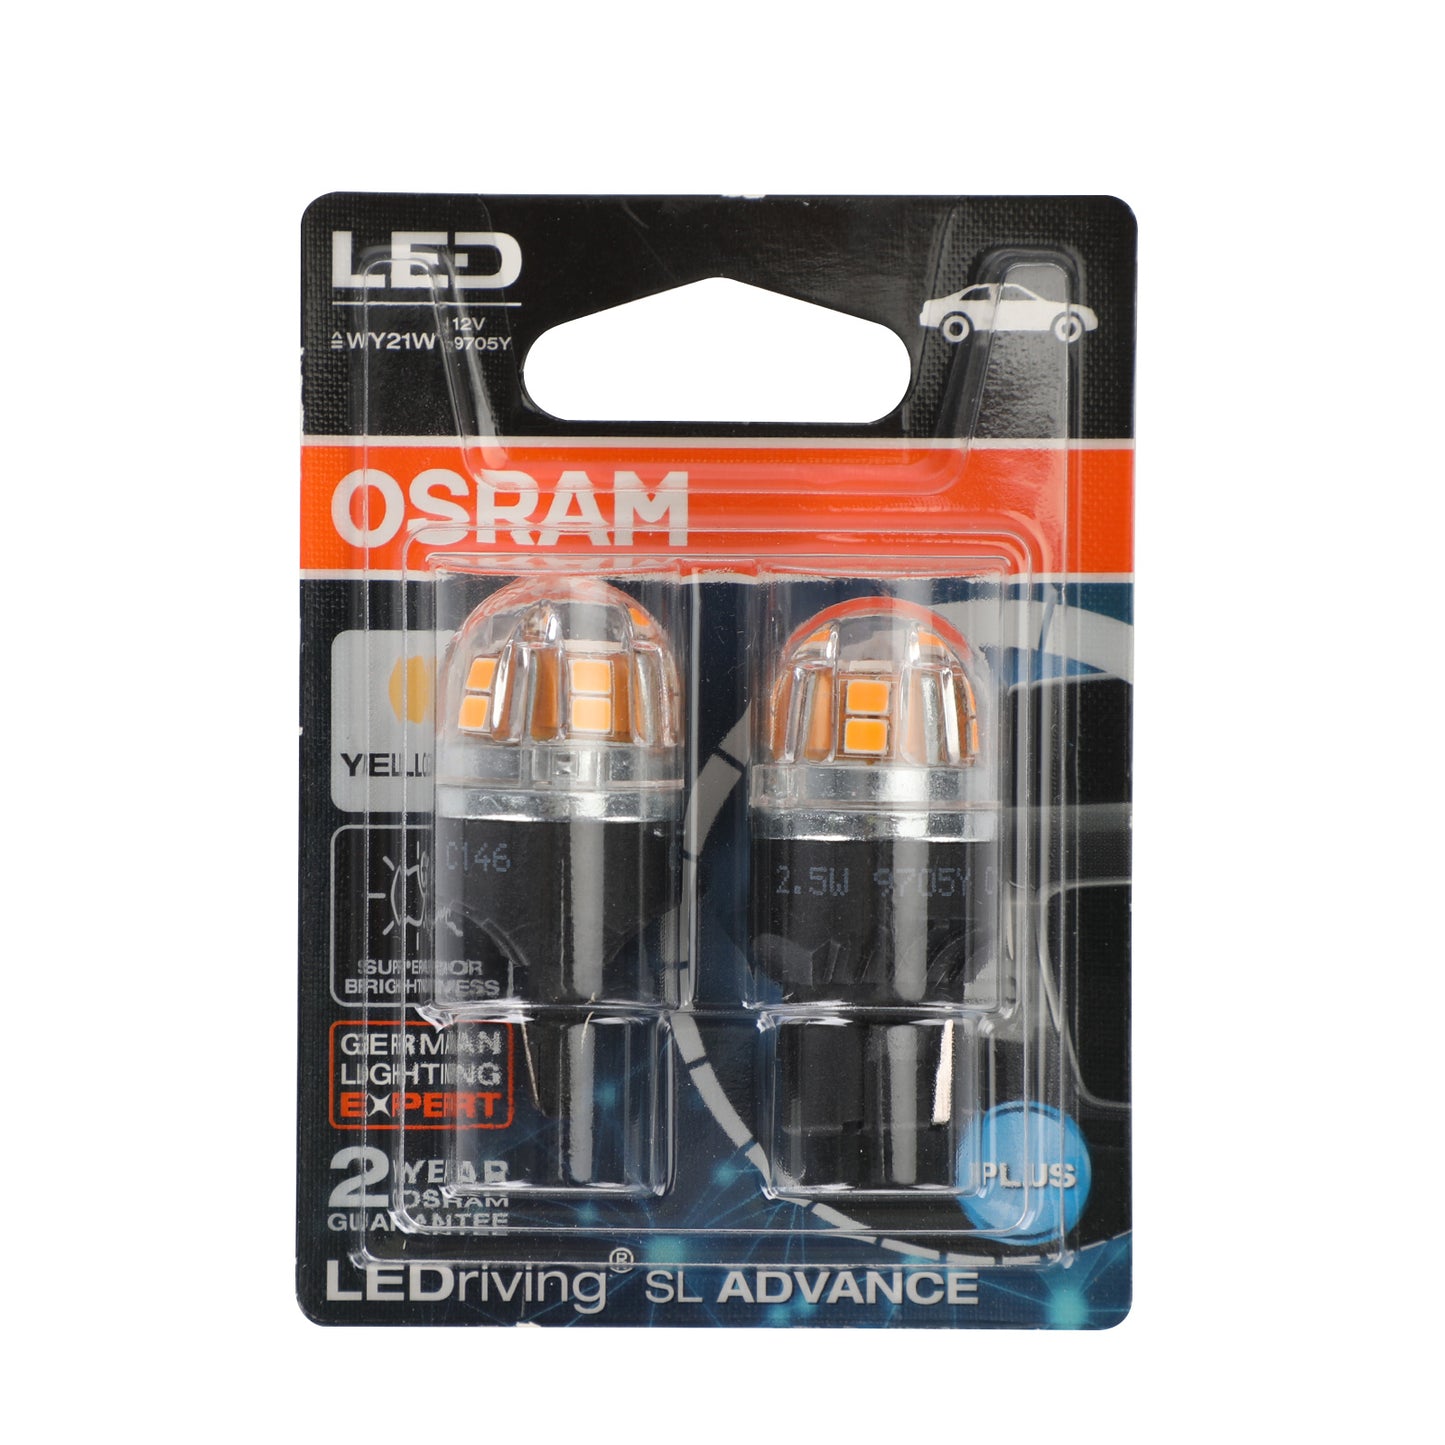 2x pour ampoules auxiliaires de voiture OSRAM 9705Y LED WY21W 12V2.5W WX3x16d